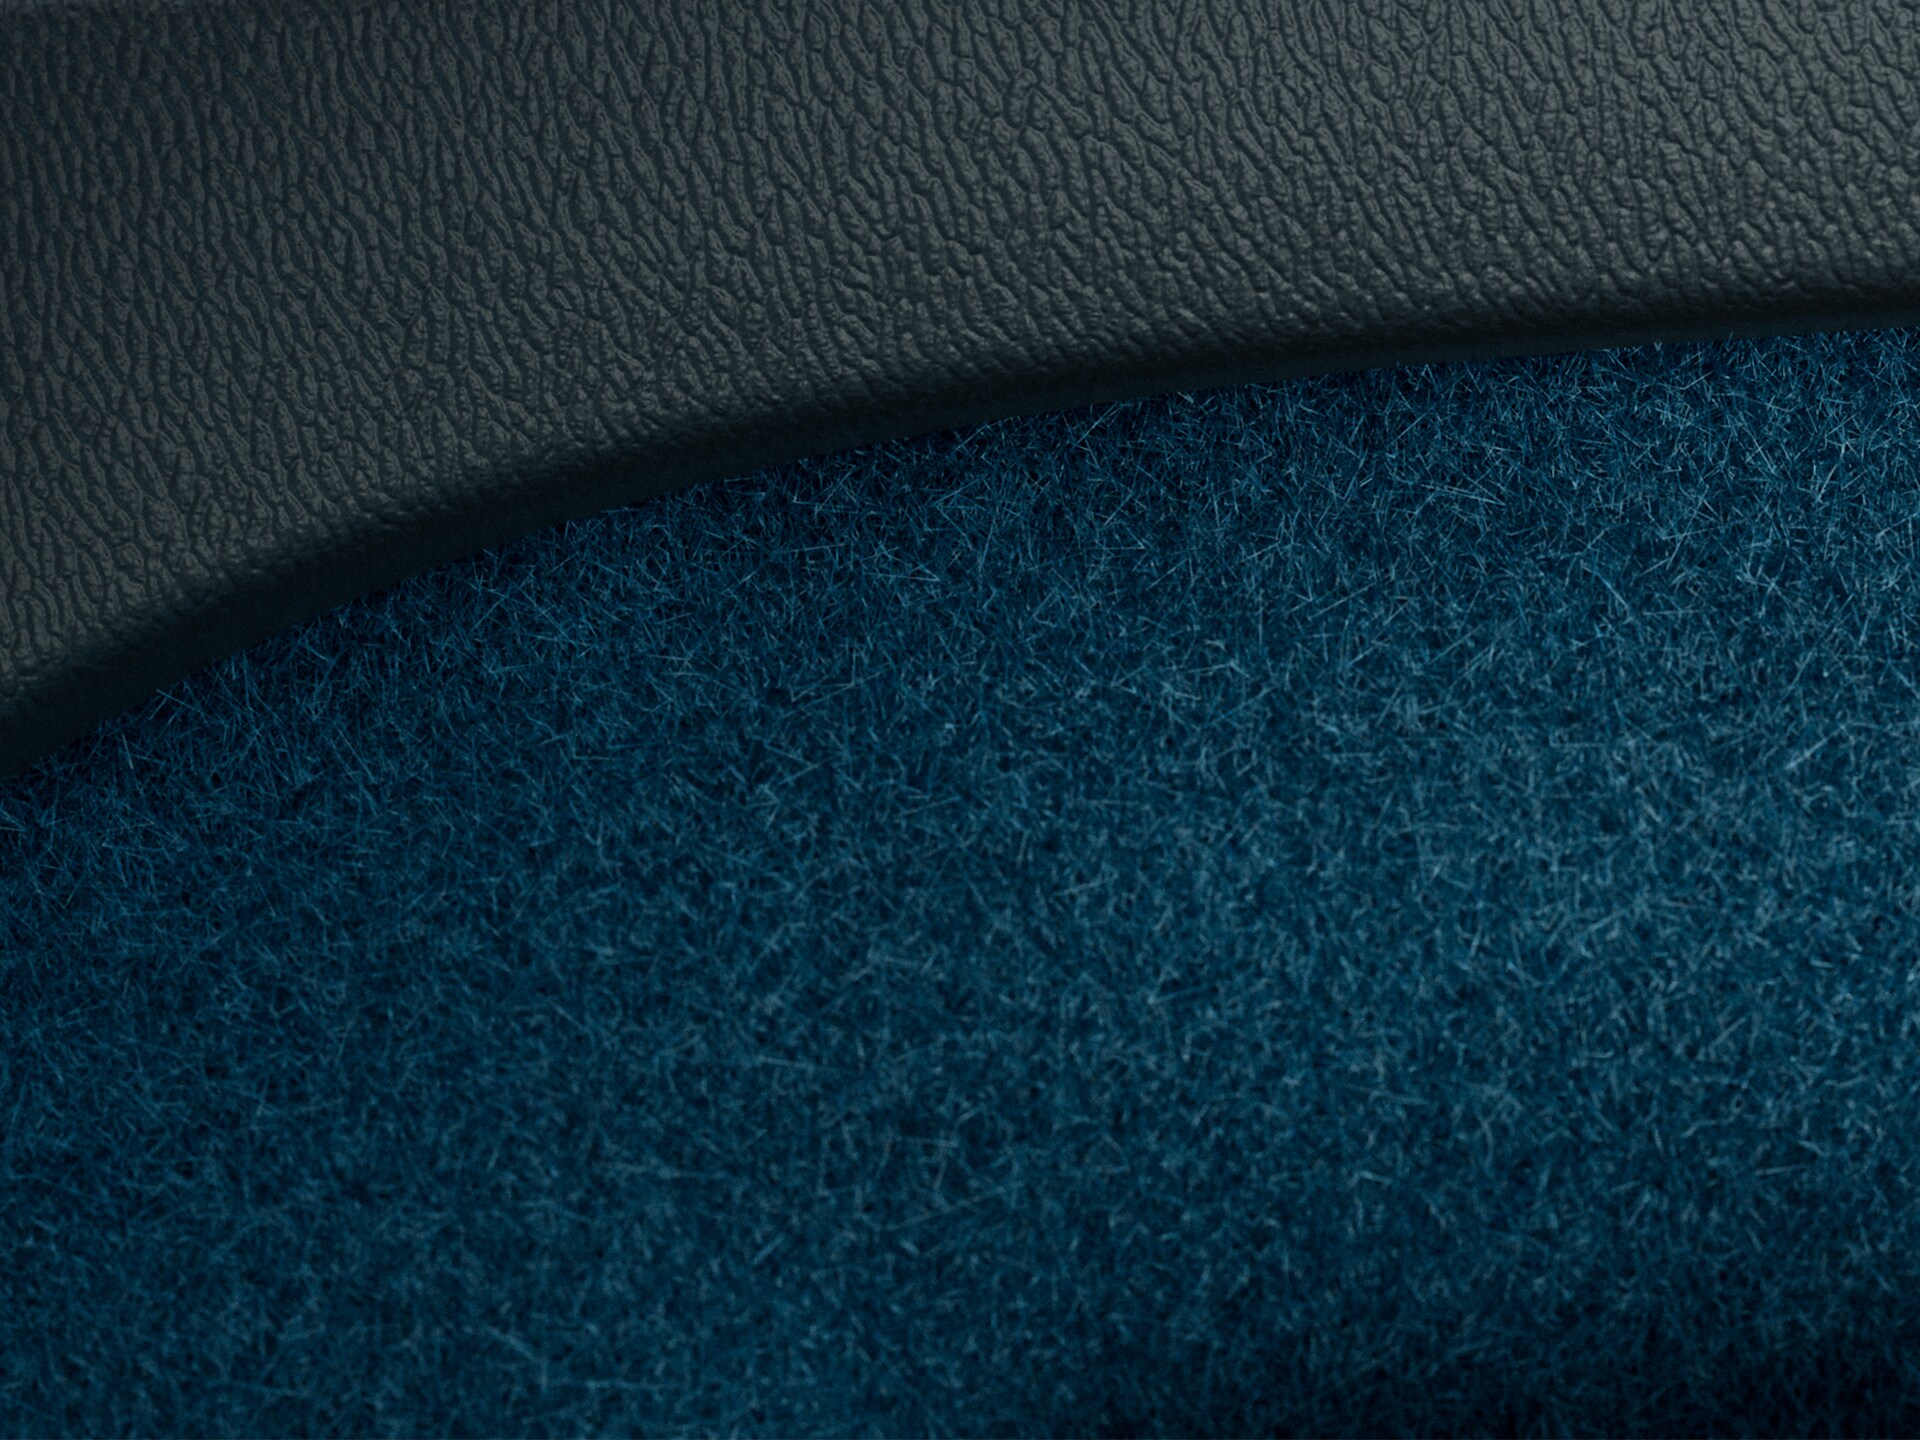 沃尔沃 C40 RECHARGE 地毯采用峡湾蓝配色并由部分循环材料制成。